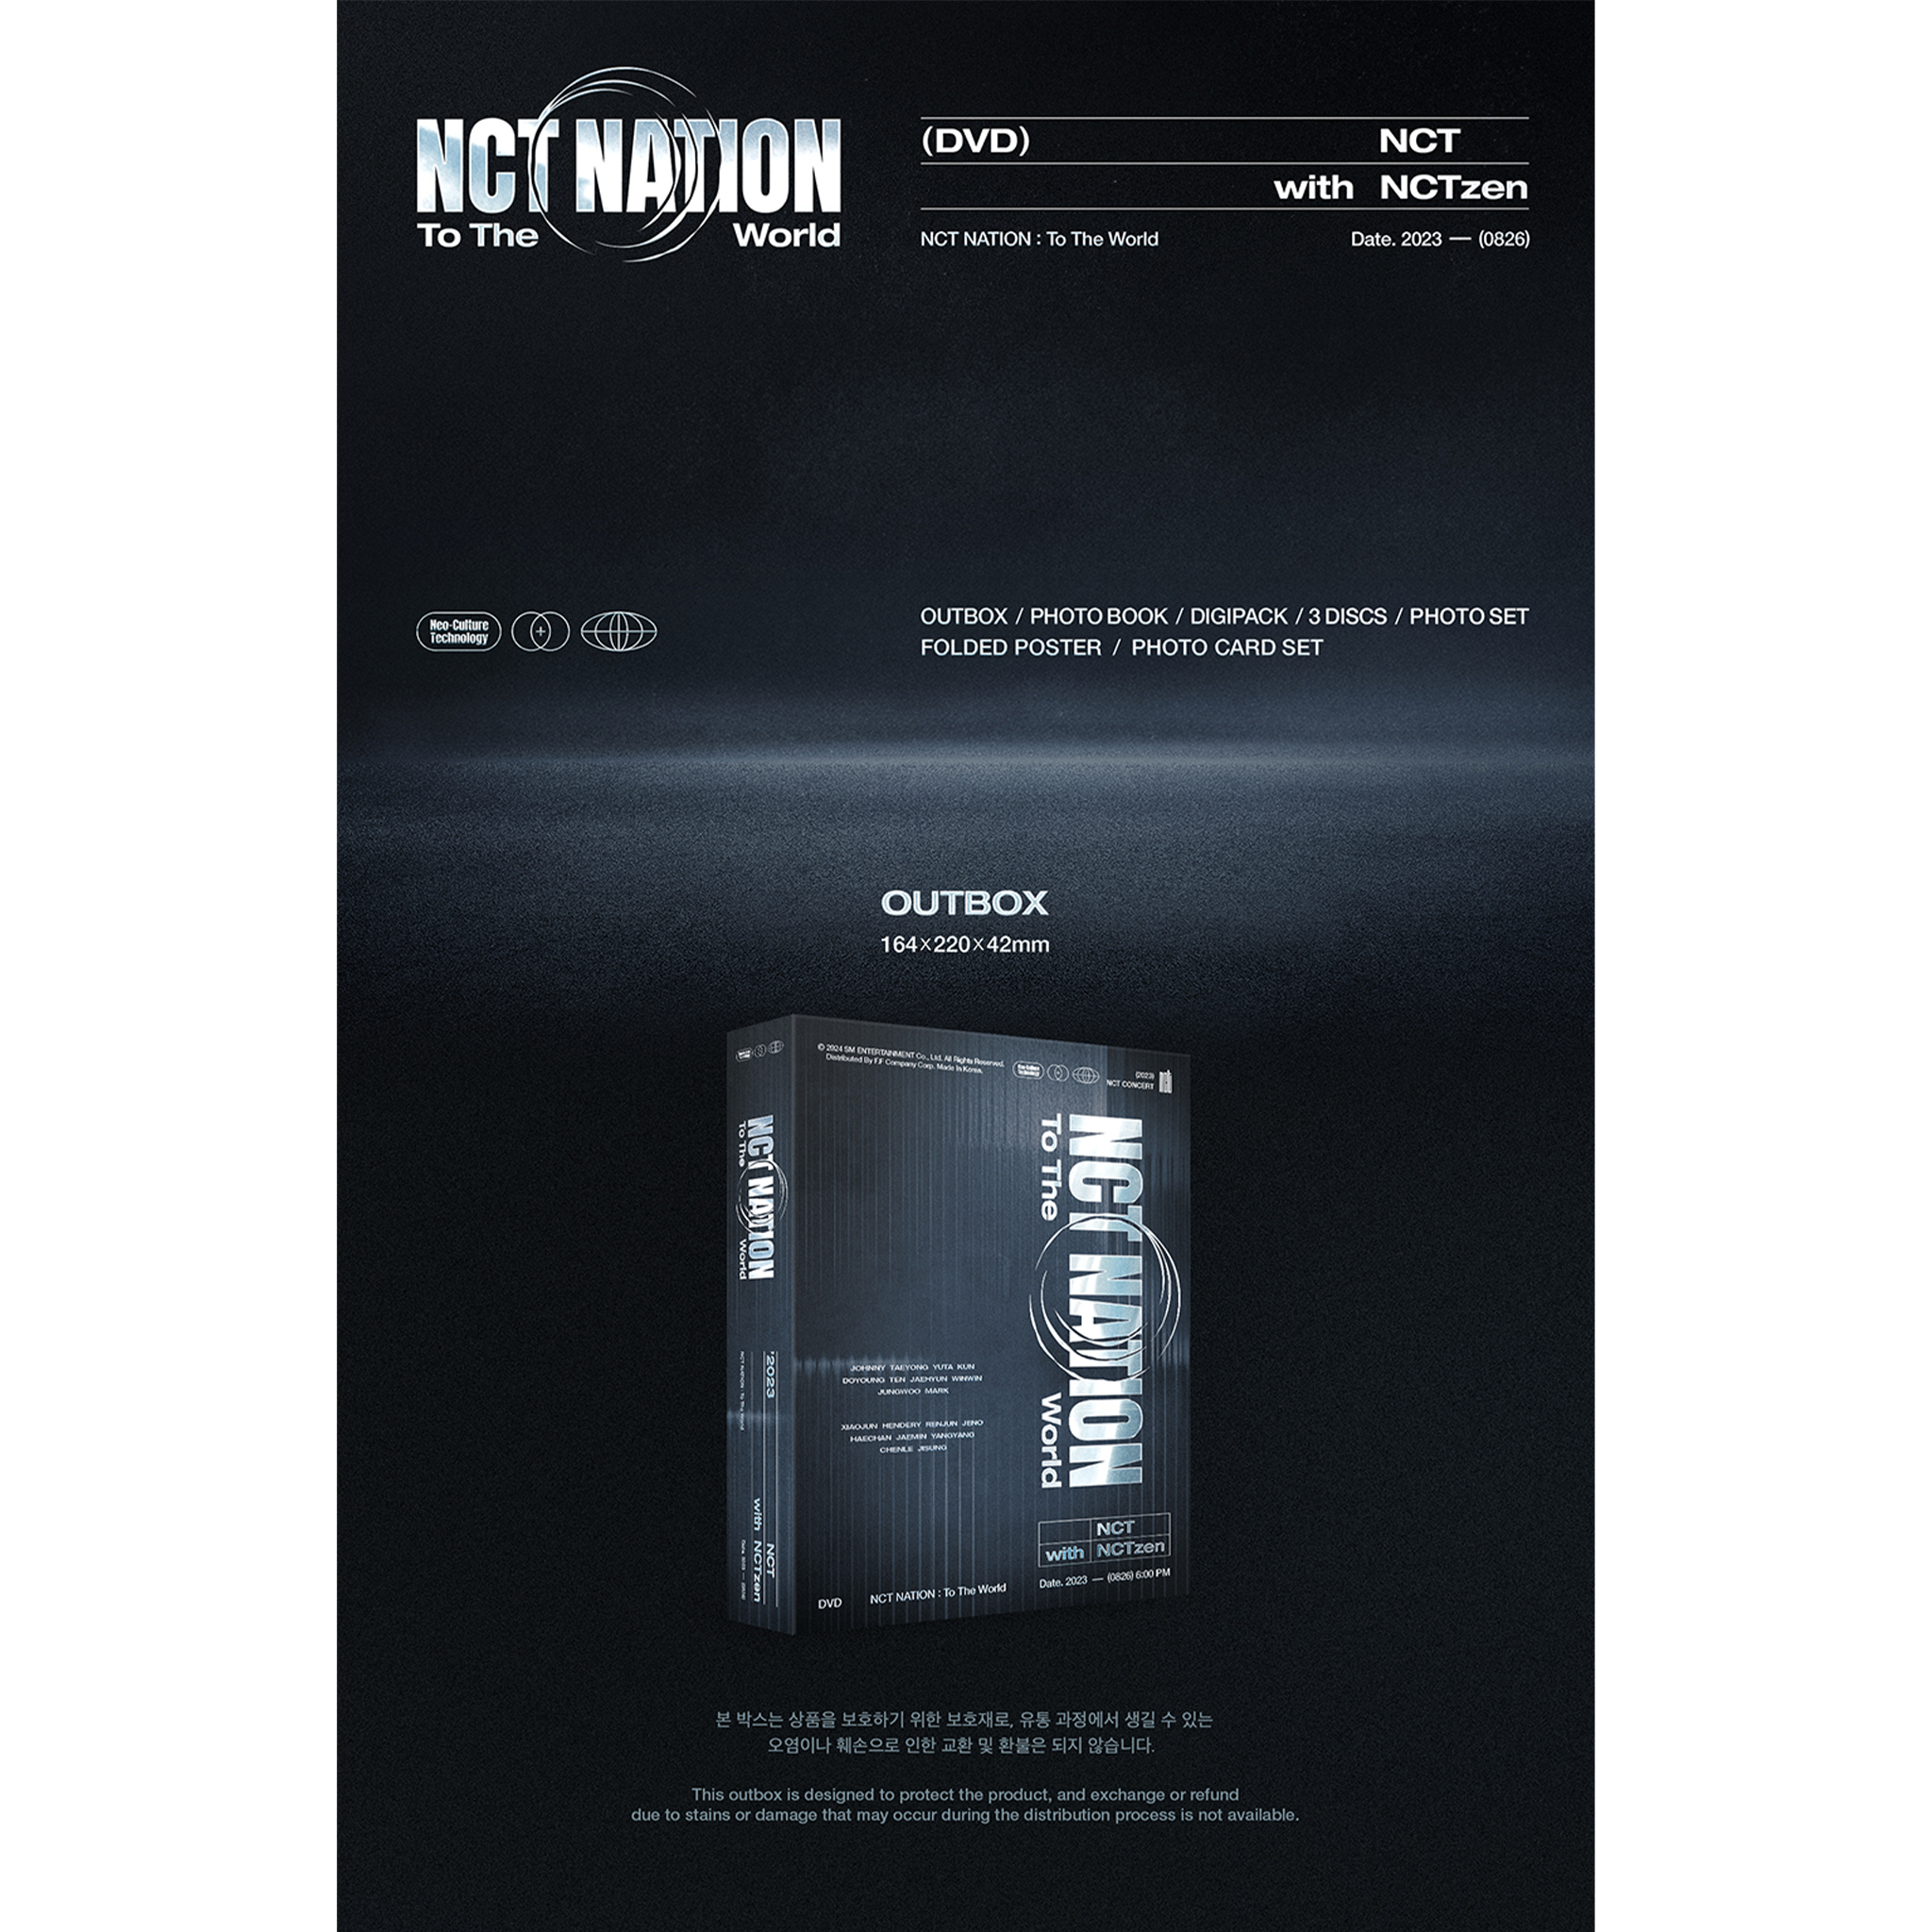 nctnation-dvd.png